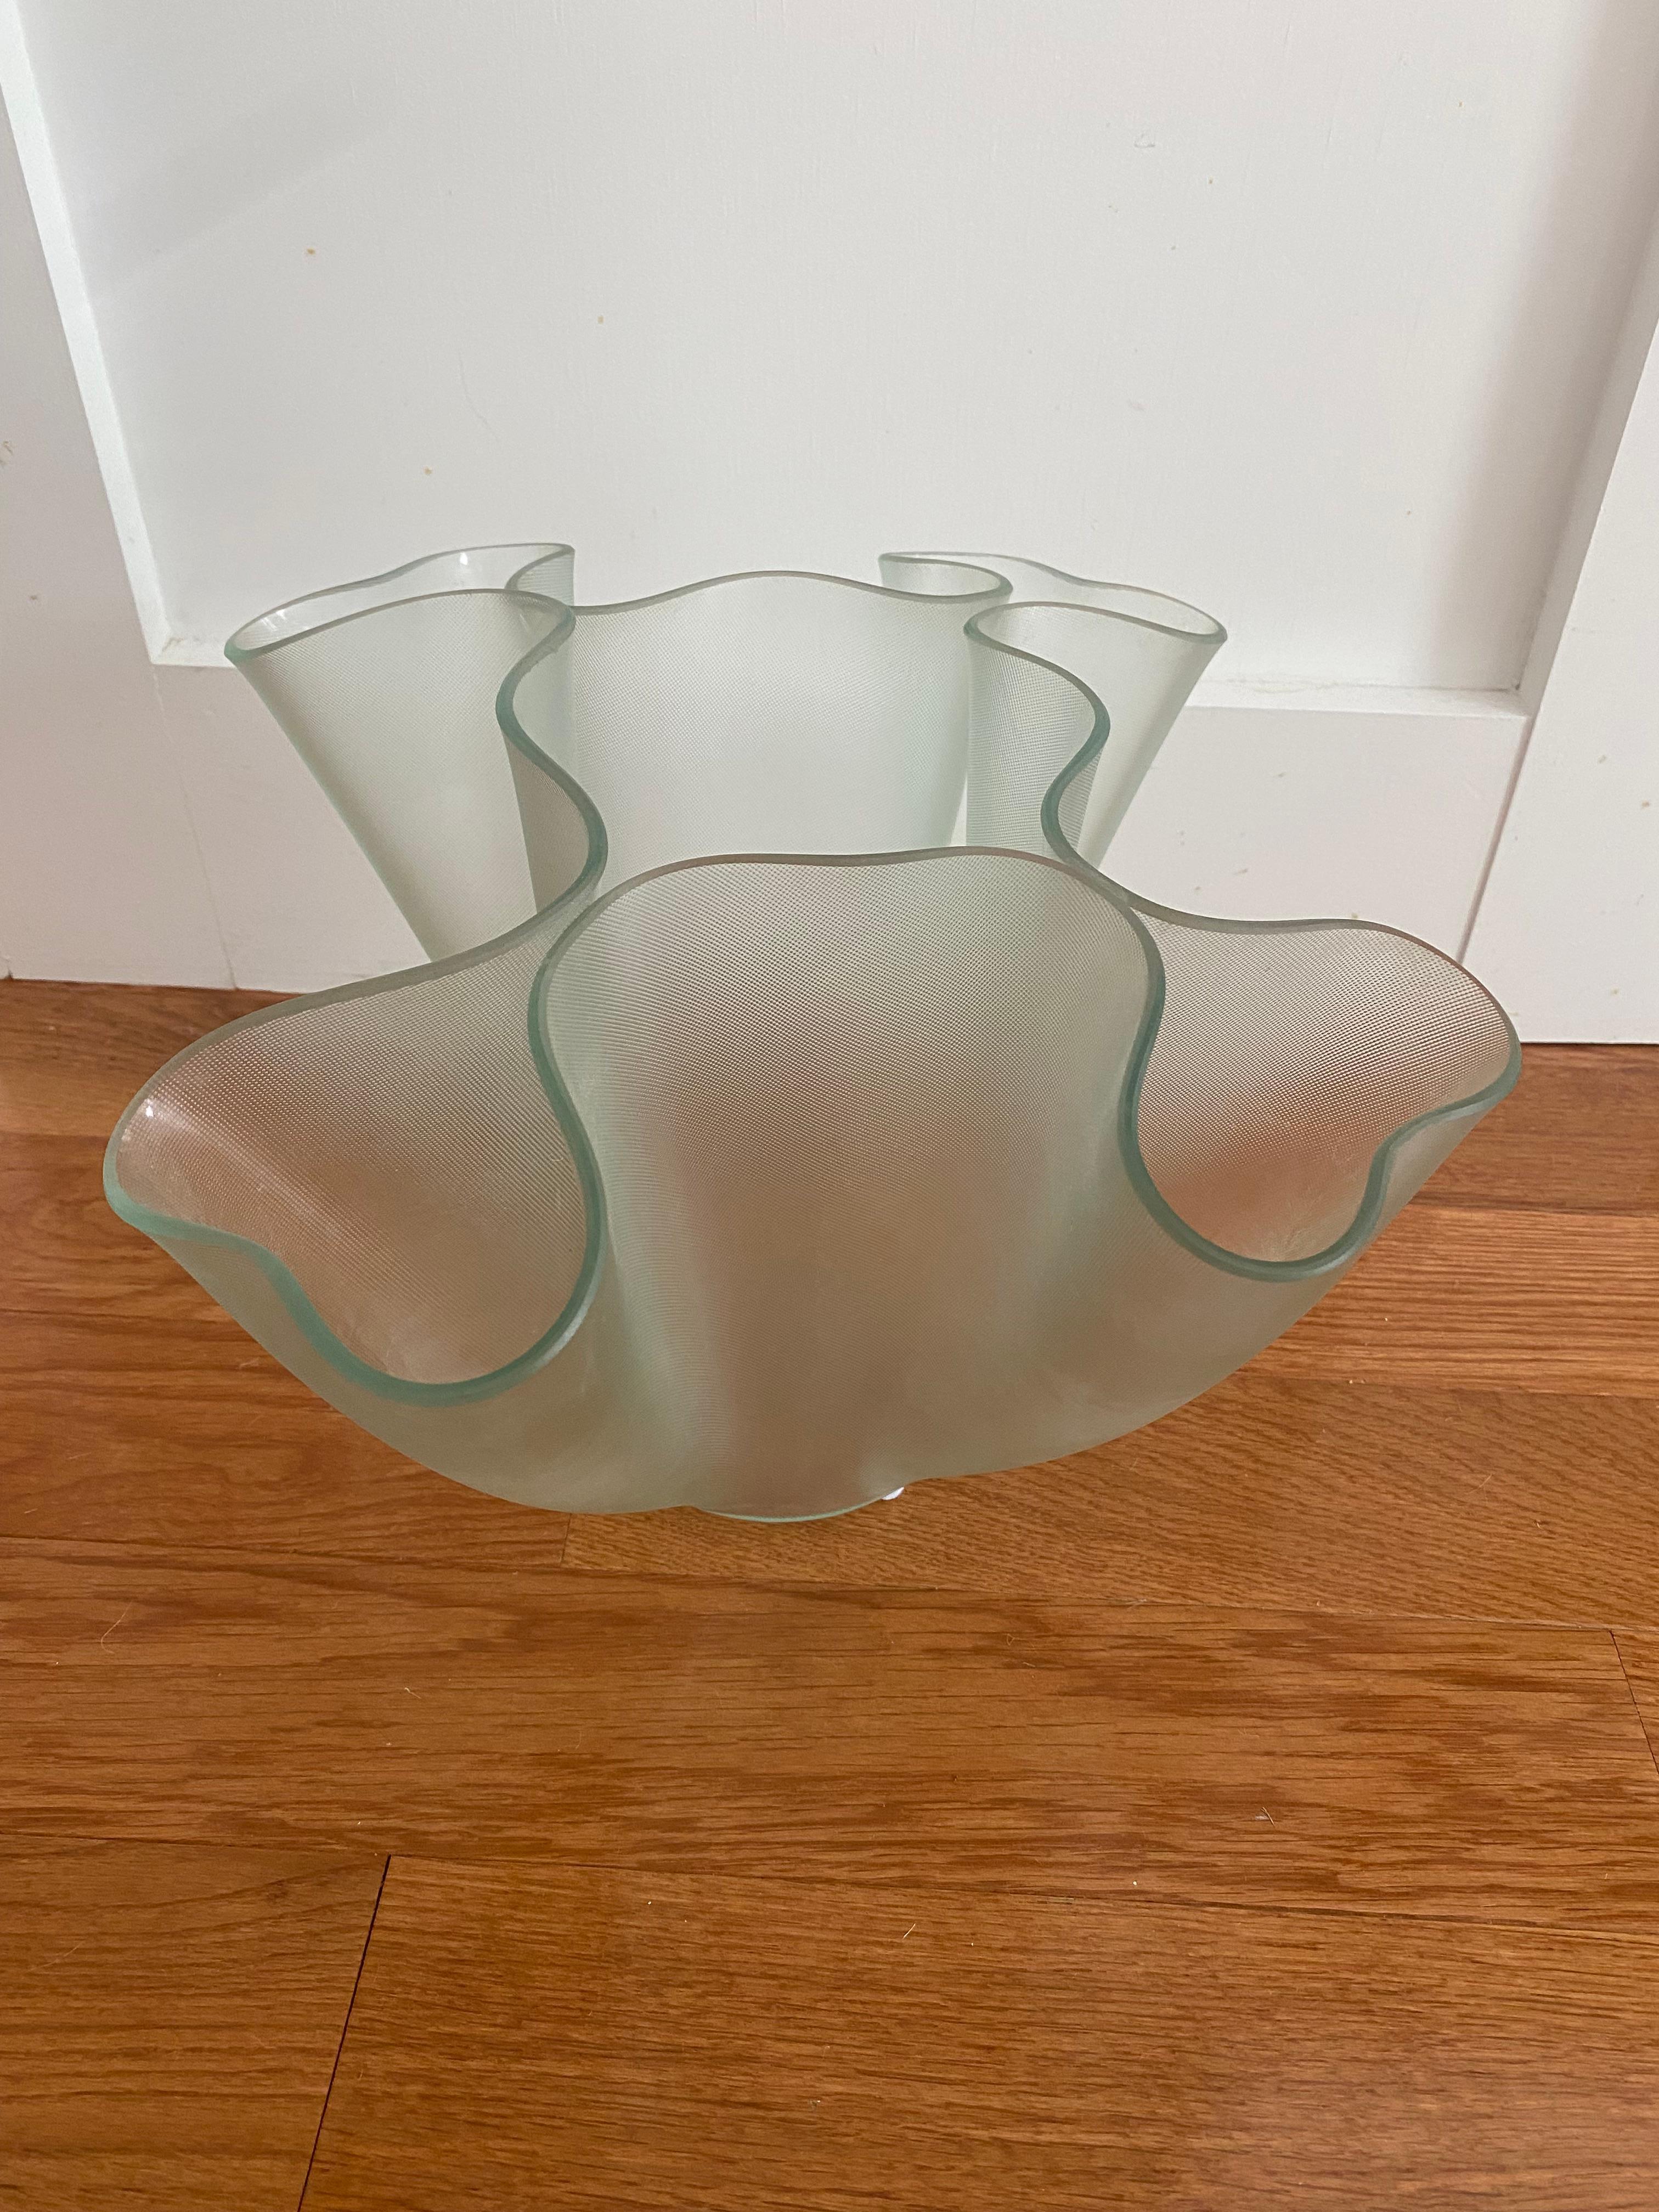 Vase aus strukturiertem Glas in freier Form, entworfen in den 1940er Jahren und seitdem in Produktion.
Fontana Arte ikonische Form für einfaches Blumenarrangement.
ca. 13 x 13 x 9 Zoll hoch